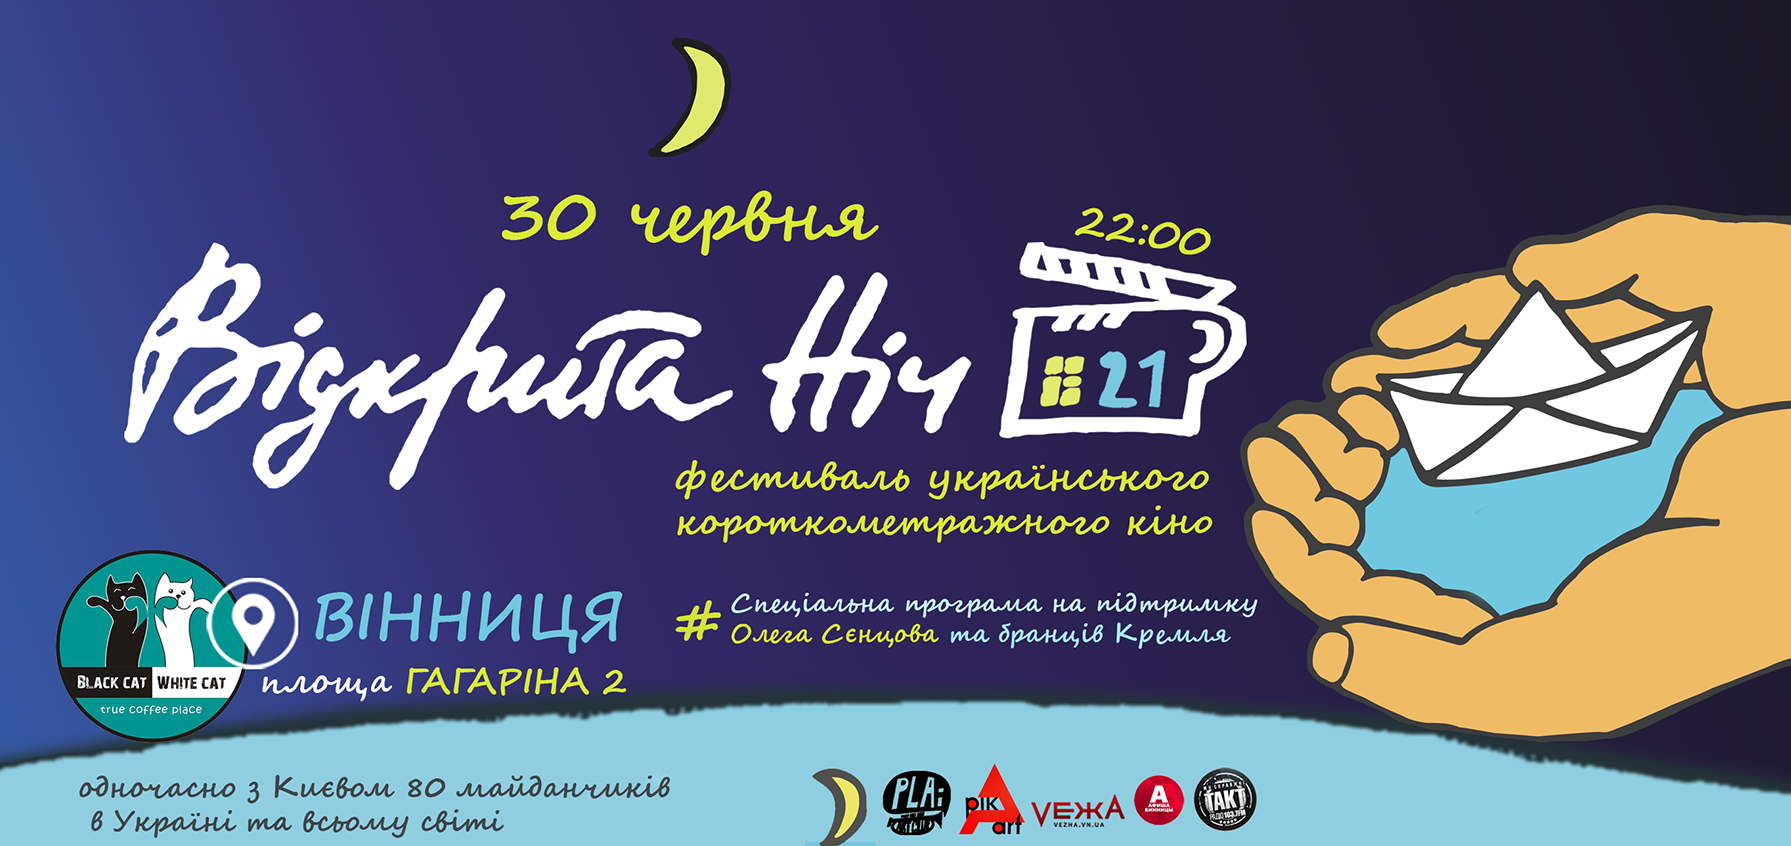 У Вінниці відбудеться фестиваль “Відкрита ніч “Дубль 21”